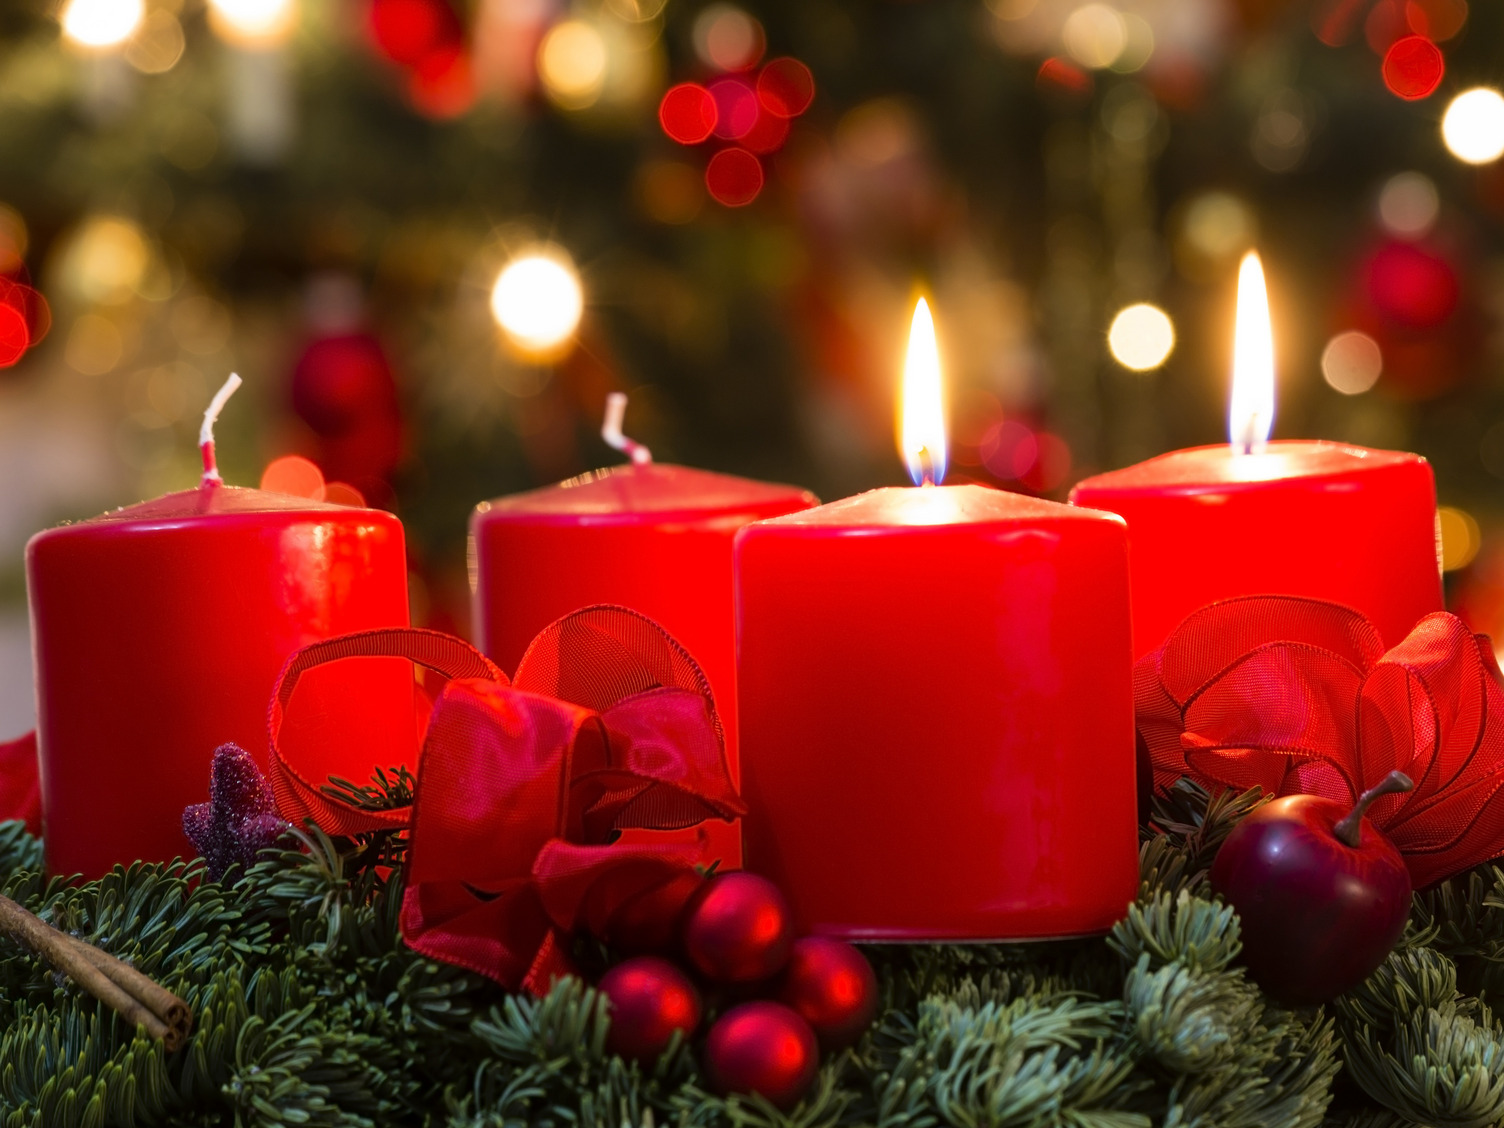 Ein Adventskranz aus Tannenzweigen mit 4 roten Kerzen. Der Kranz ist mit roten Schleifen geschmückt.